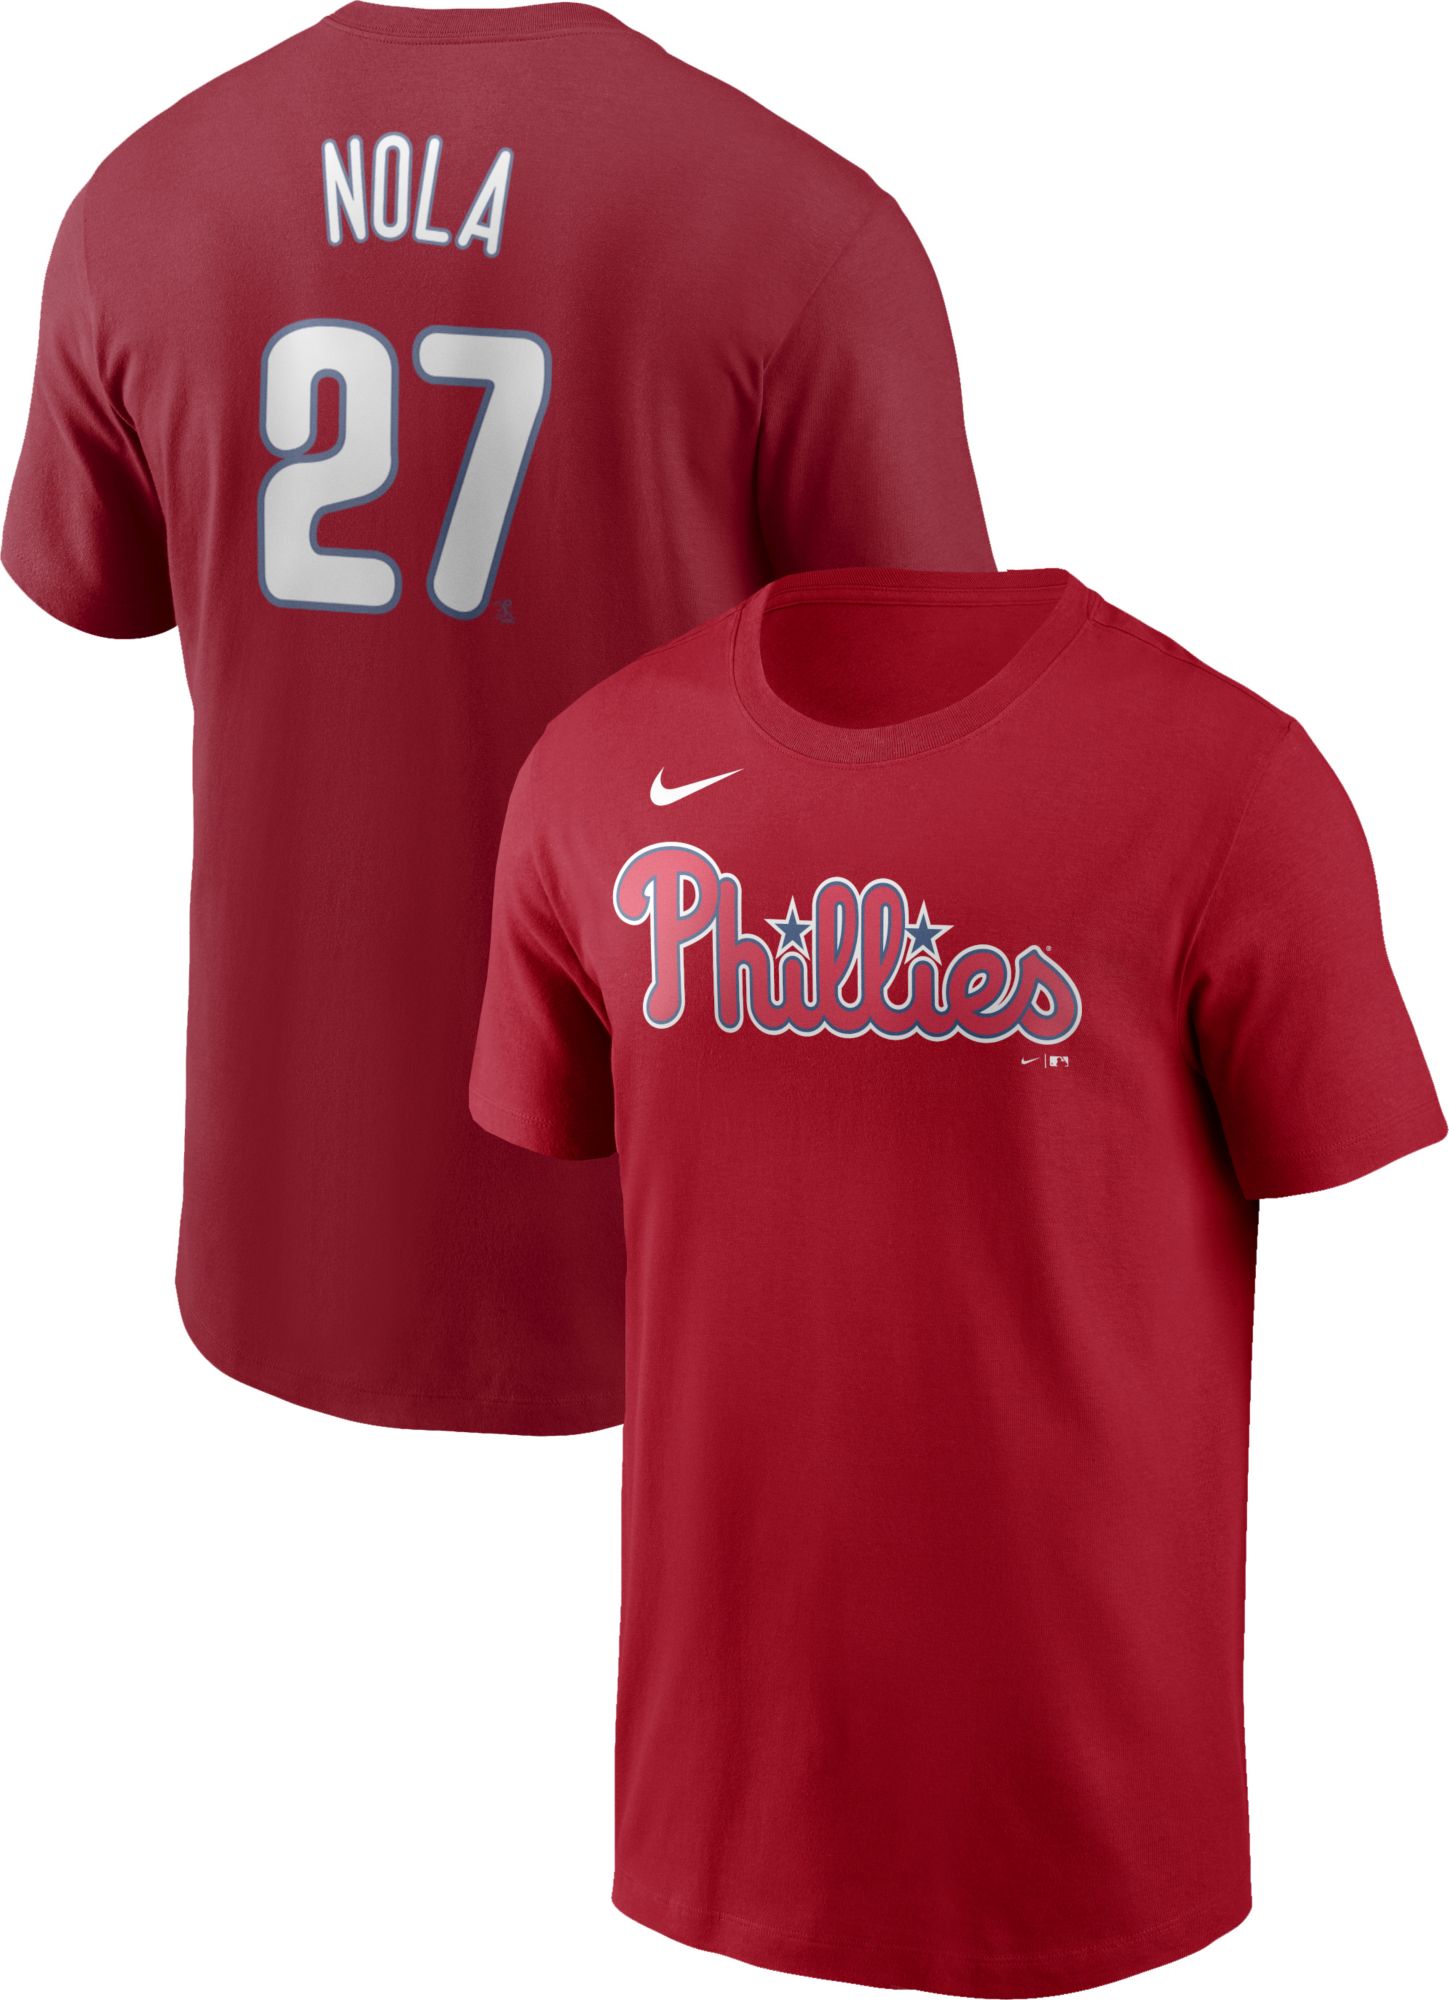 Nike / Men's Philadelphia Phillies Aaron Nola #27 Red T-Shirt